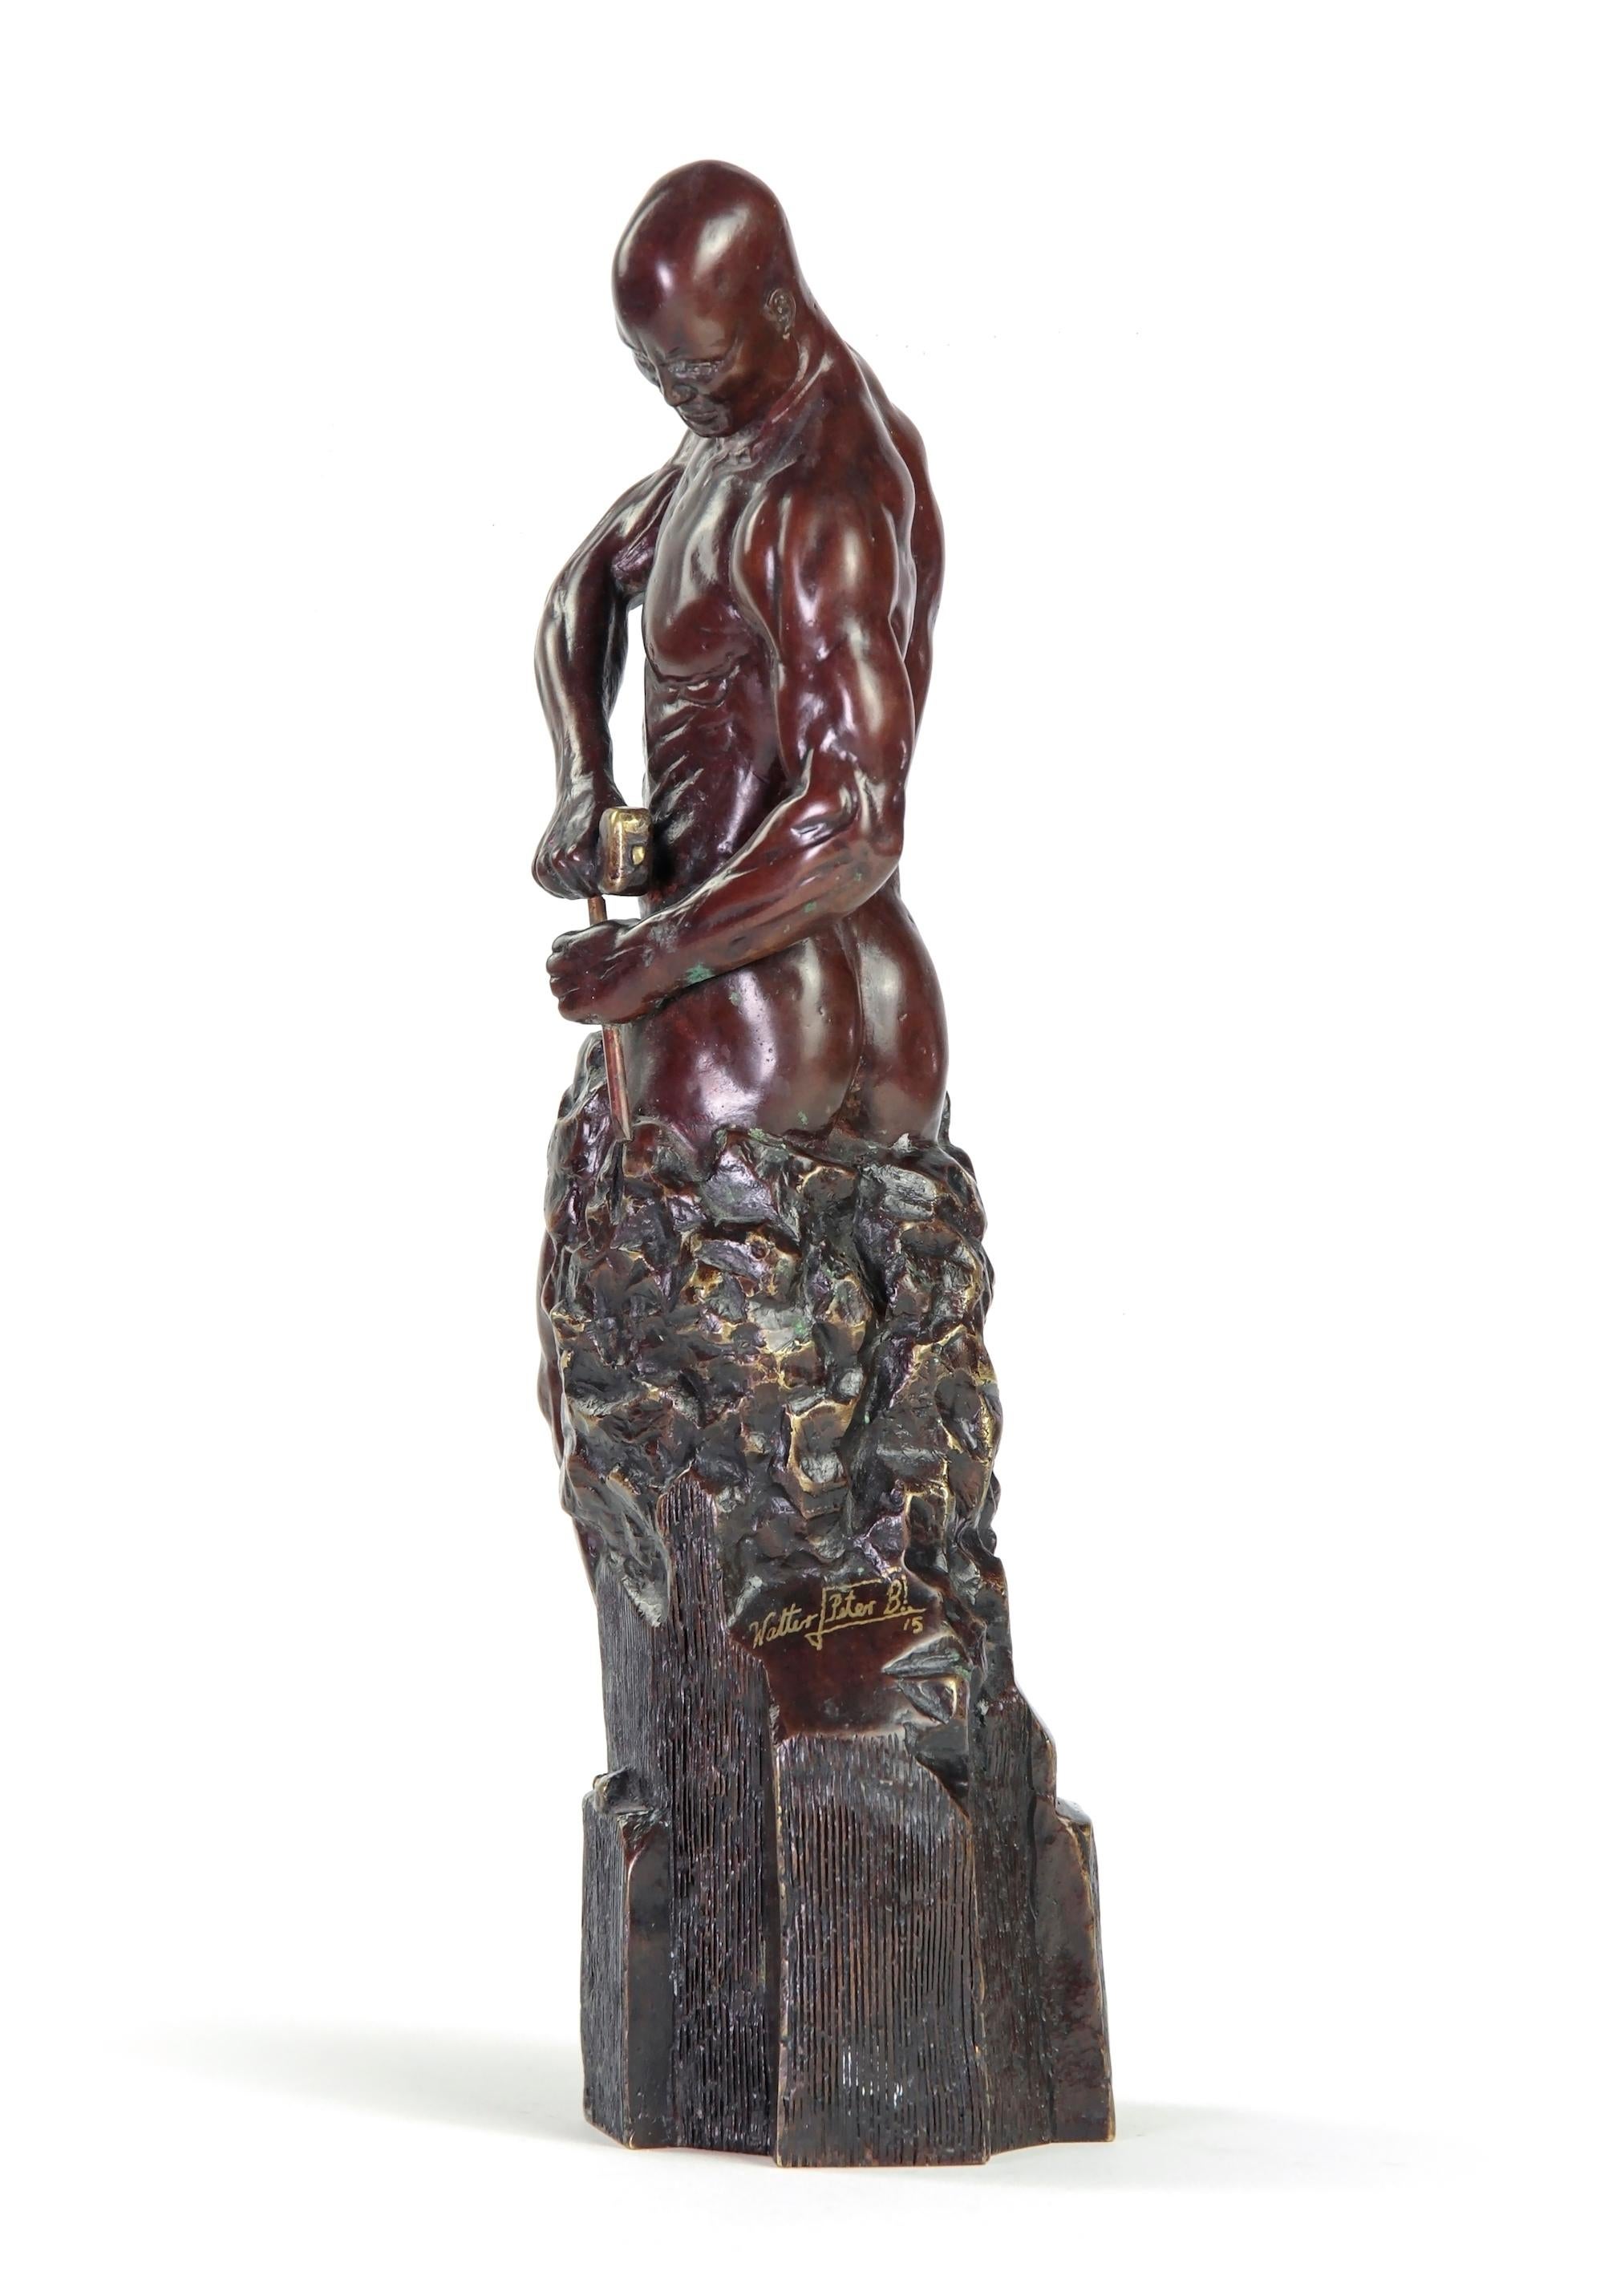 Master of Your Own Destiny von Walter P. Brenner – Nackte männliche Bronzeskulptur – Sculpture von Walter Peter Brenner